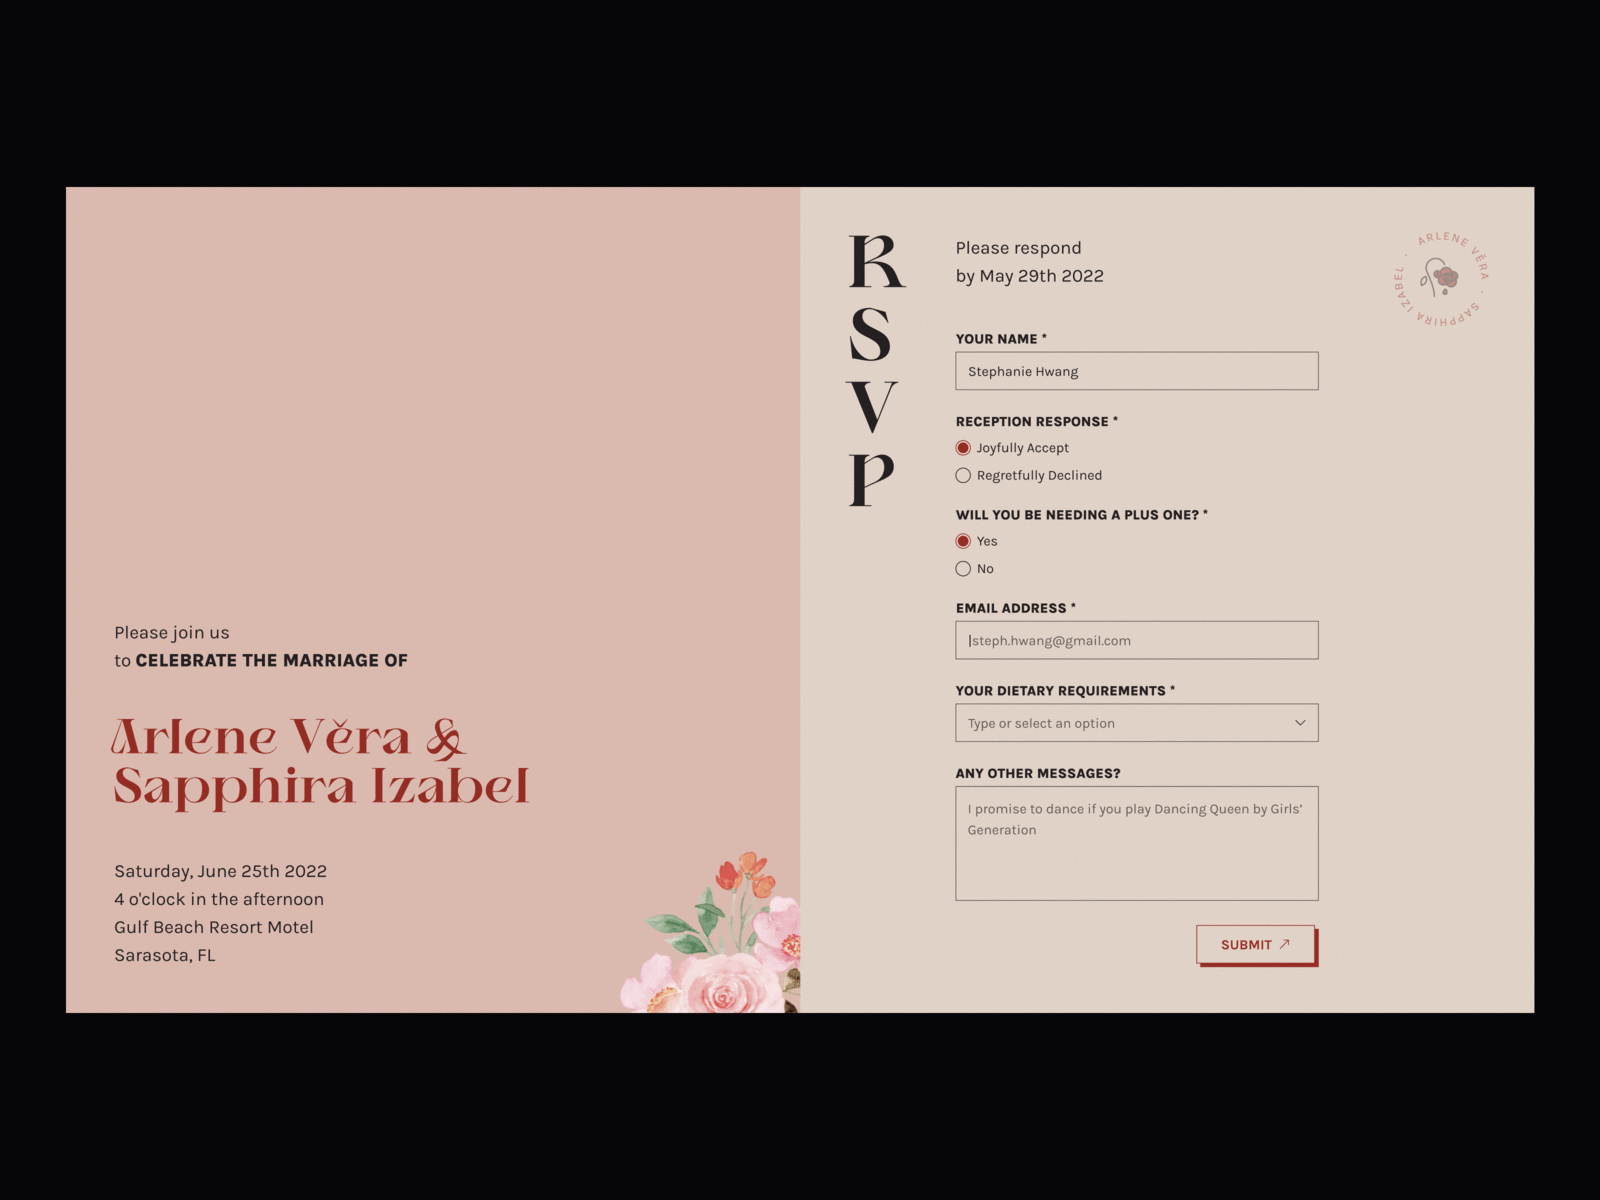 RSVP form design design form rsvp ui wedding